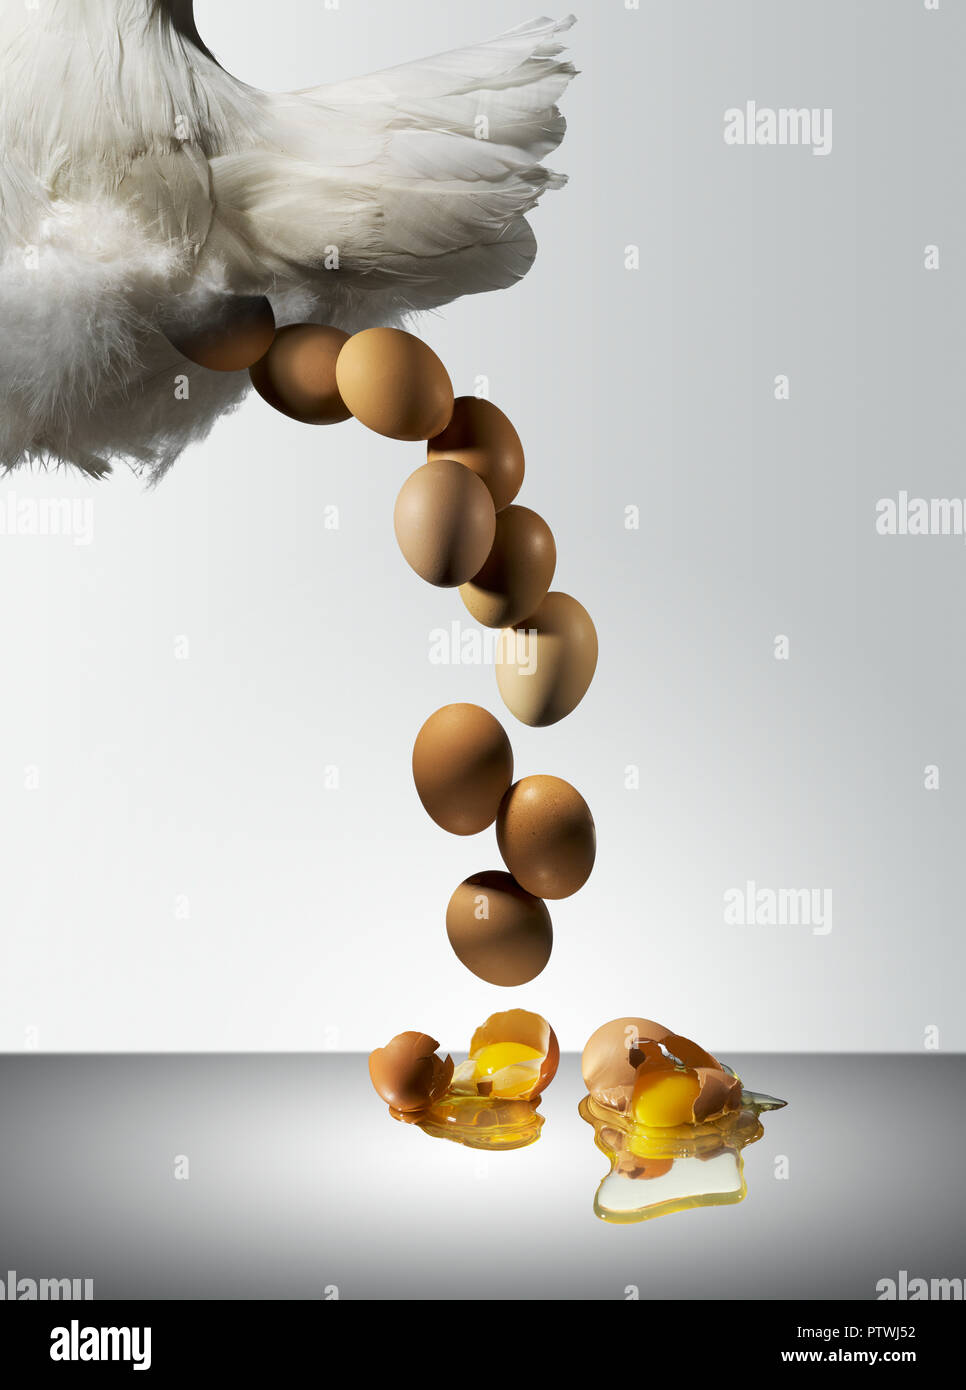 Posa di gallina uova fresche con tuorlo e albume si versi sulla superficie Foto Stock